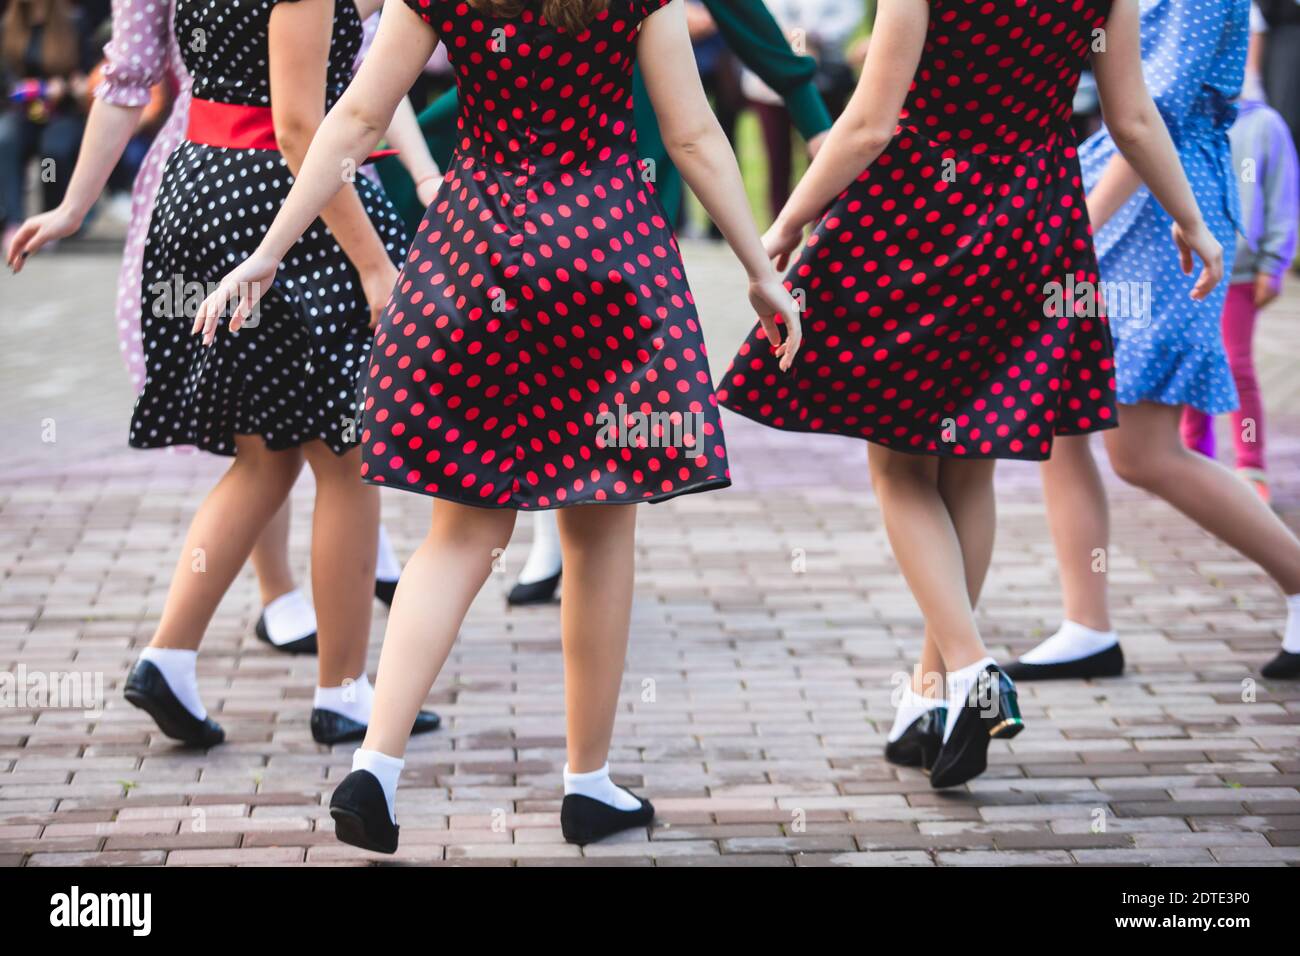 Jeunes femmes portant des robes à pois vintage dansant dans le parc de la  ville, vue rapprochée des mêmes chaussures de danse noires et des  chaussettes blanches, swing rétro de jazz féminin